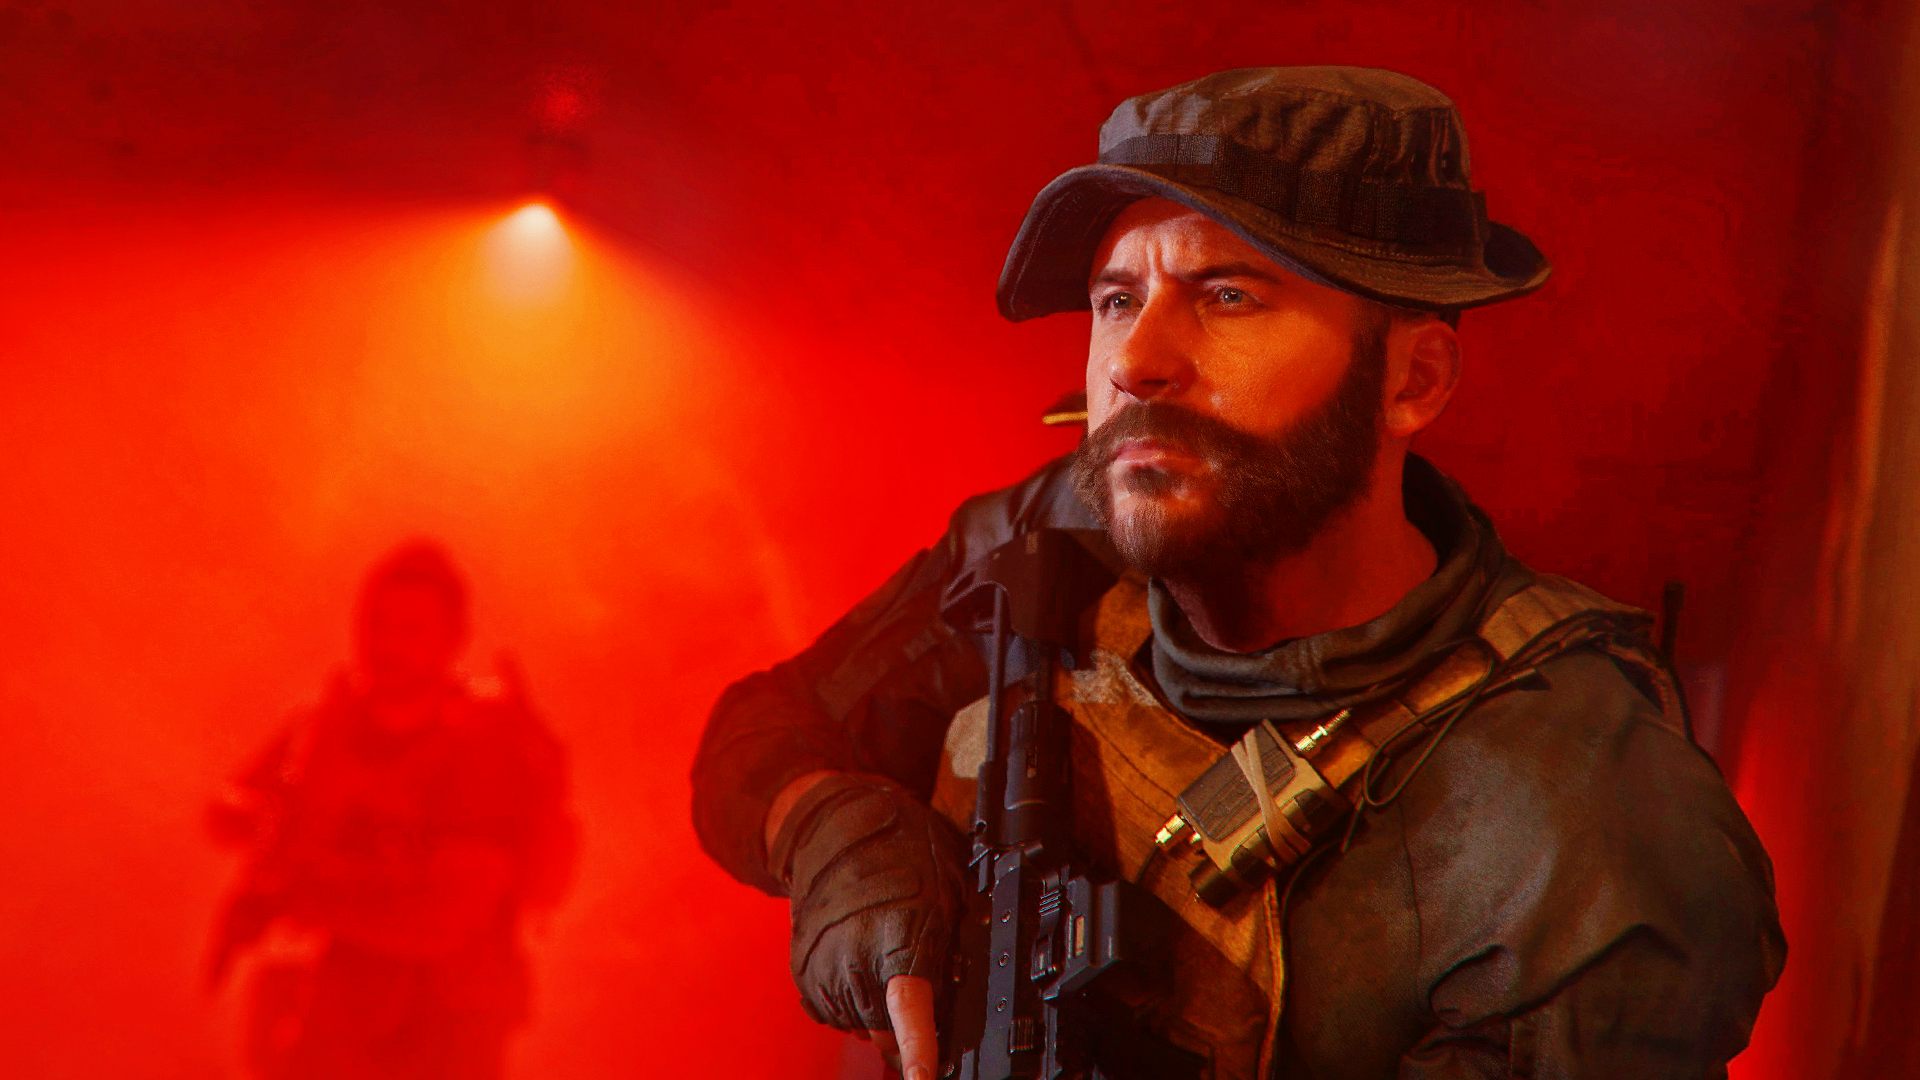 Зомби-режим Call of Duty: Modern Warfare 3 станет революцией в игровом процессе благодаря увеличенному количеству игроков и эпическим битвам с боссами